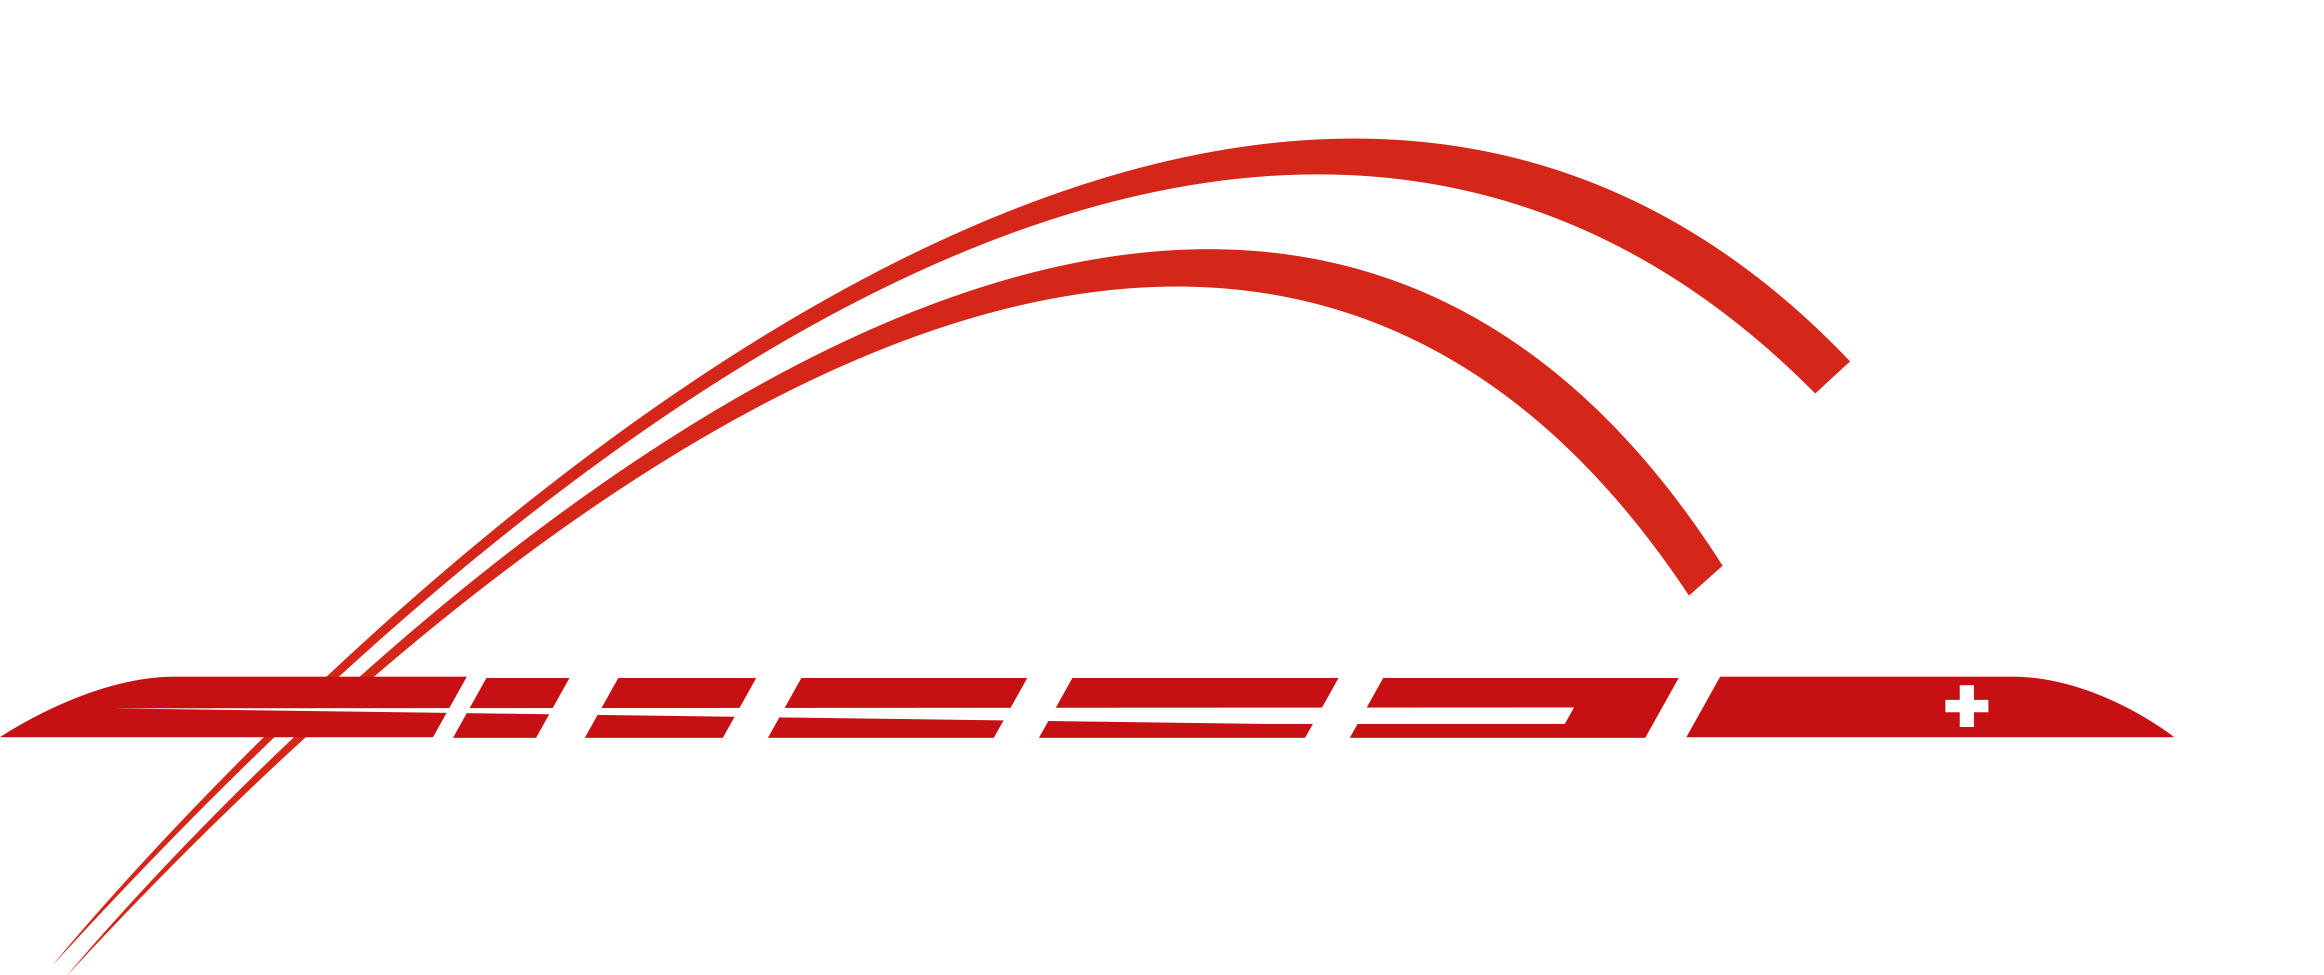 Fondation Suisse des Trains Miniatures